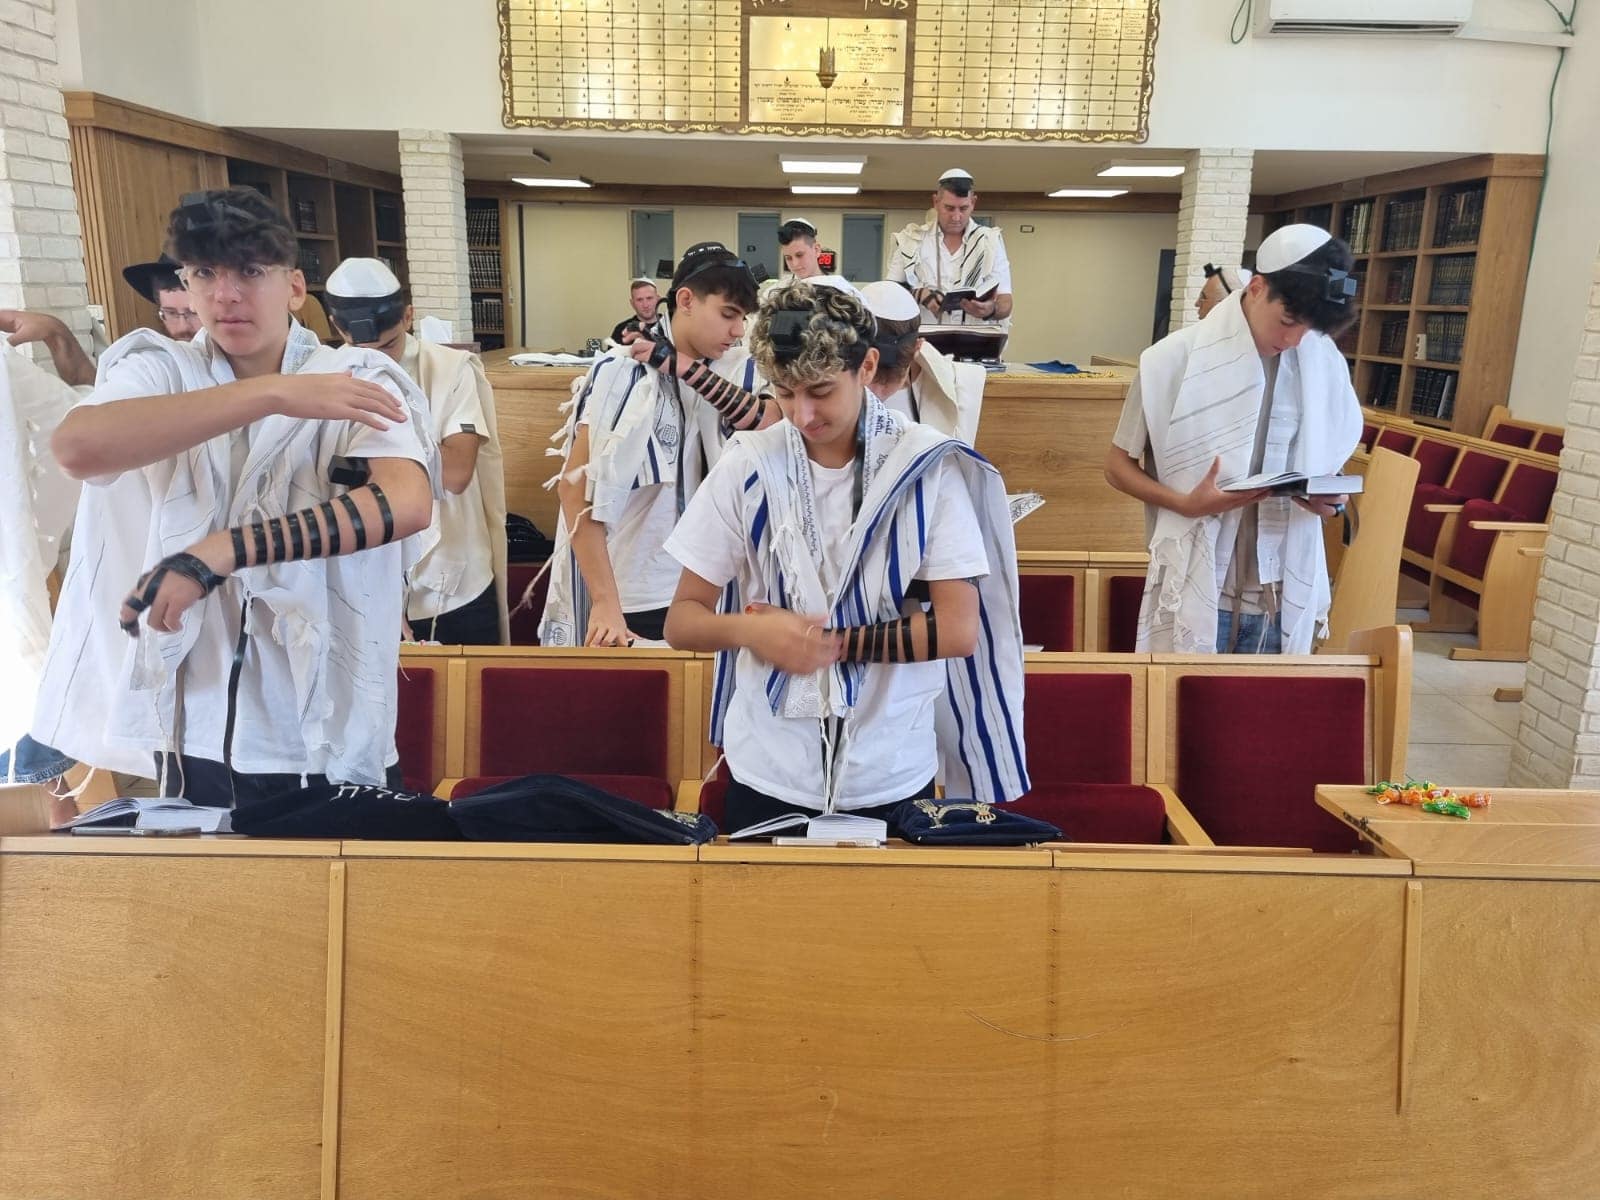 נוער מכיתה י' מהדסים בא לשמח את אופיר מאשקלון: צילום פגי פייקר